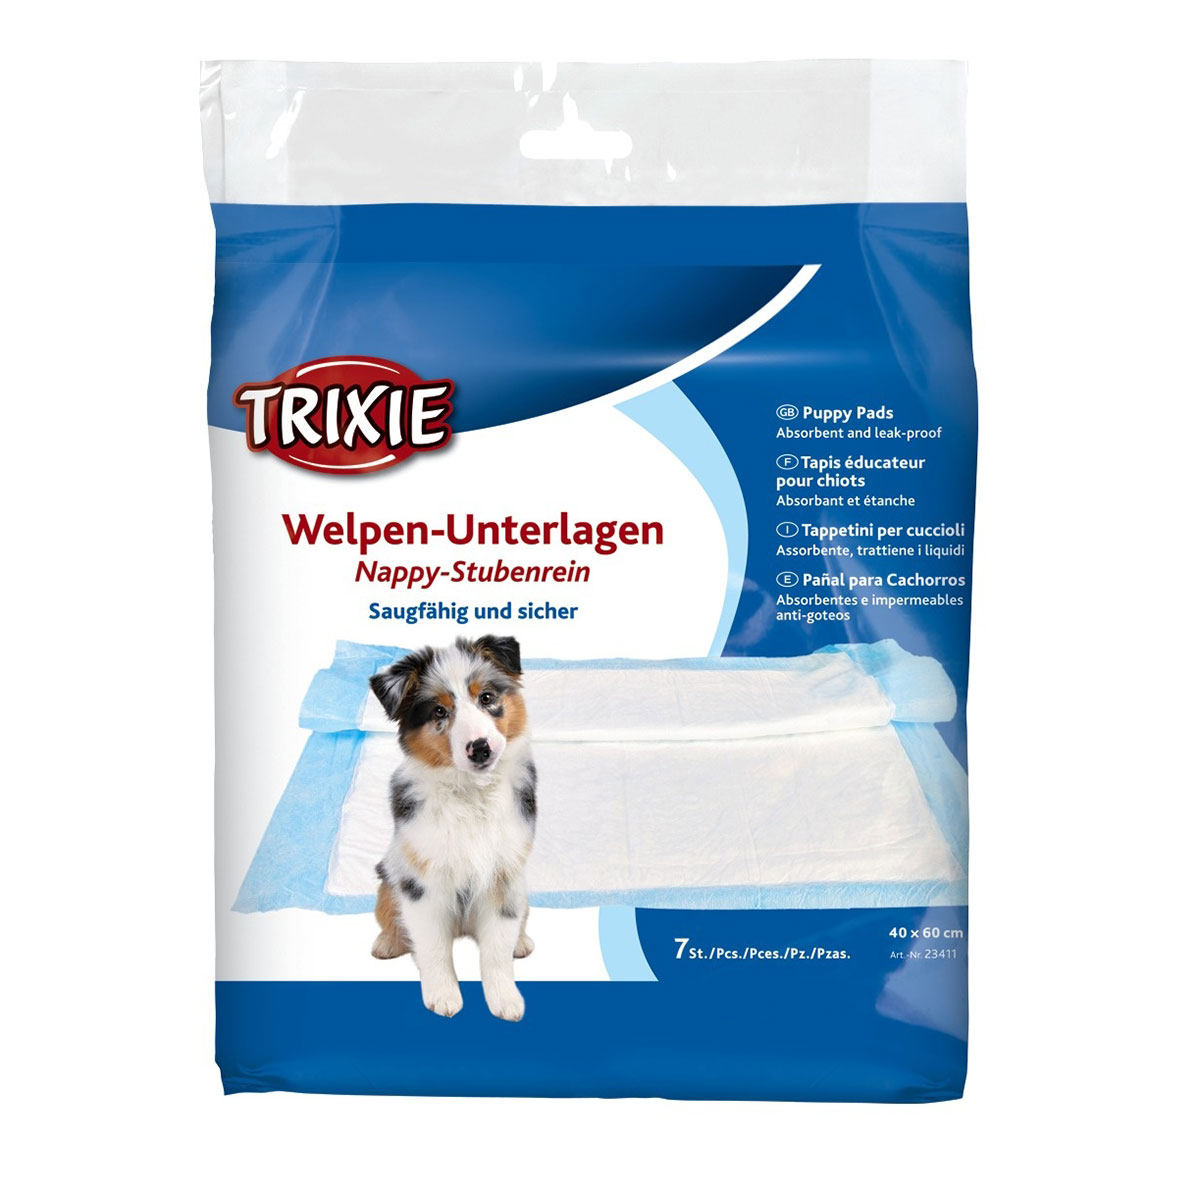 Trixie Welpen-Unterlage Nappy-Stubenrein podložka pro štěňata 40 × 60 cm balení po 6 kusech